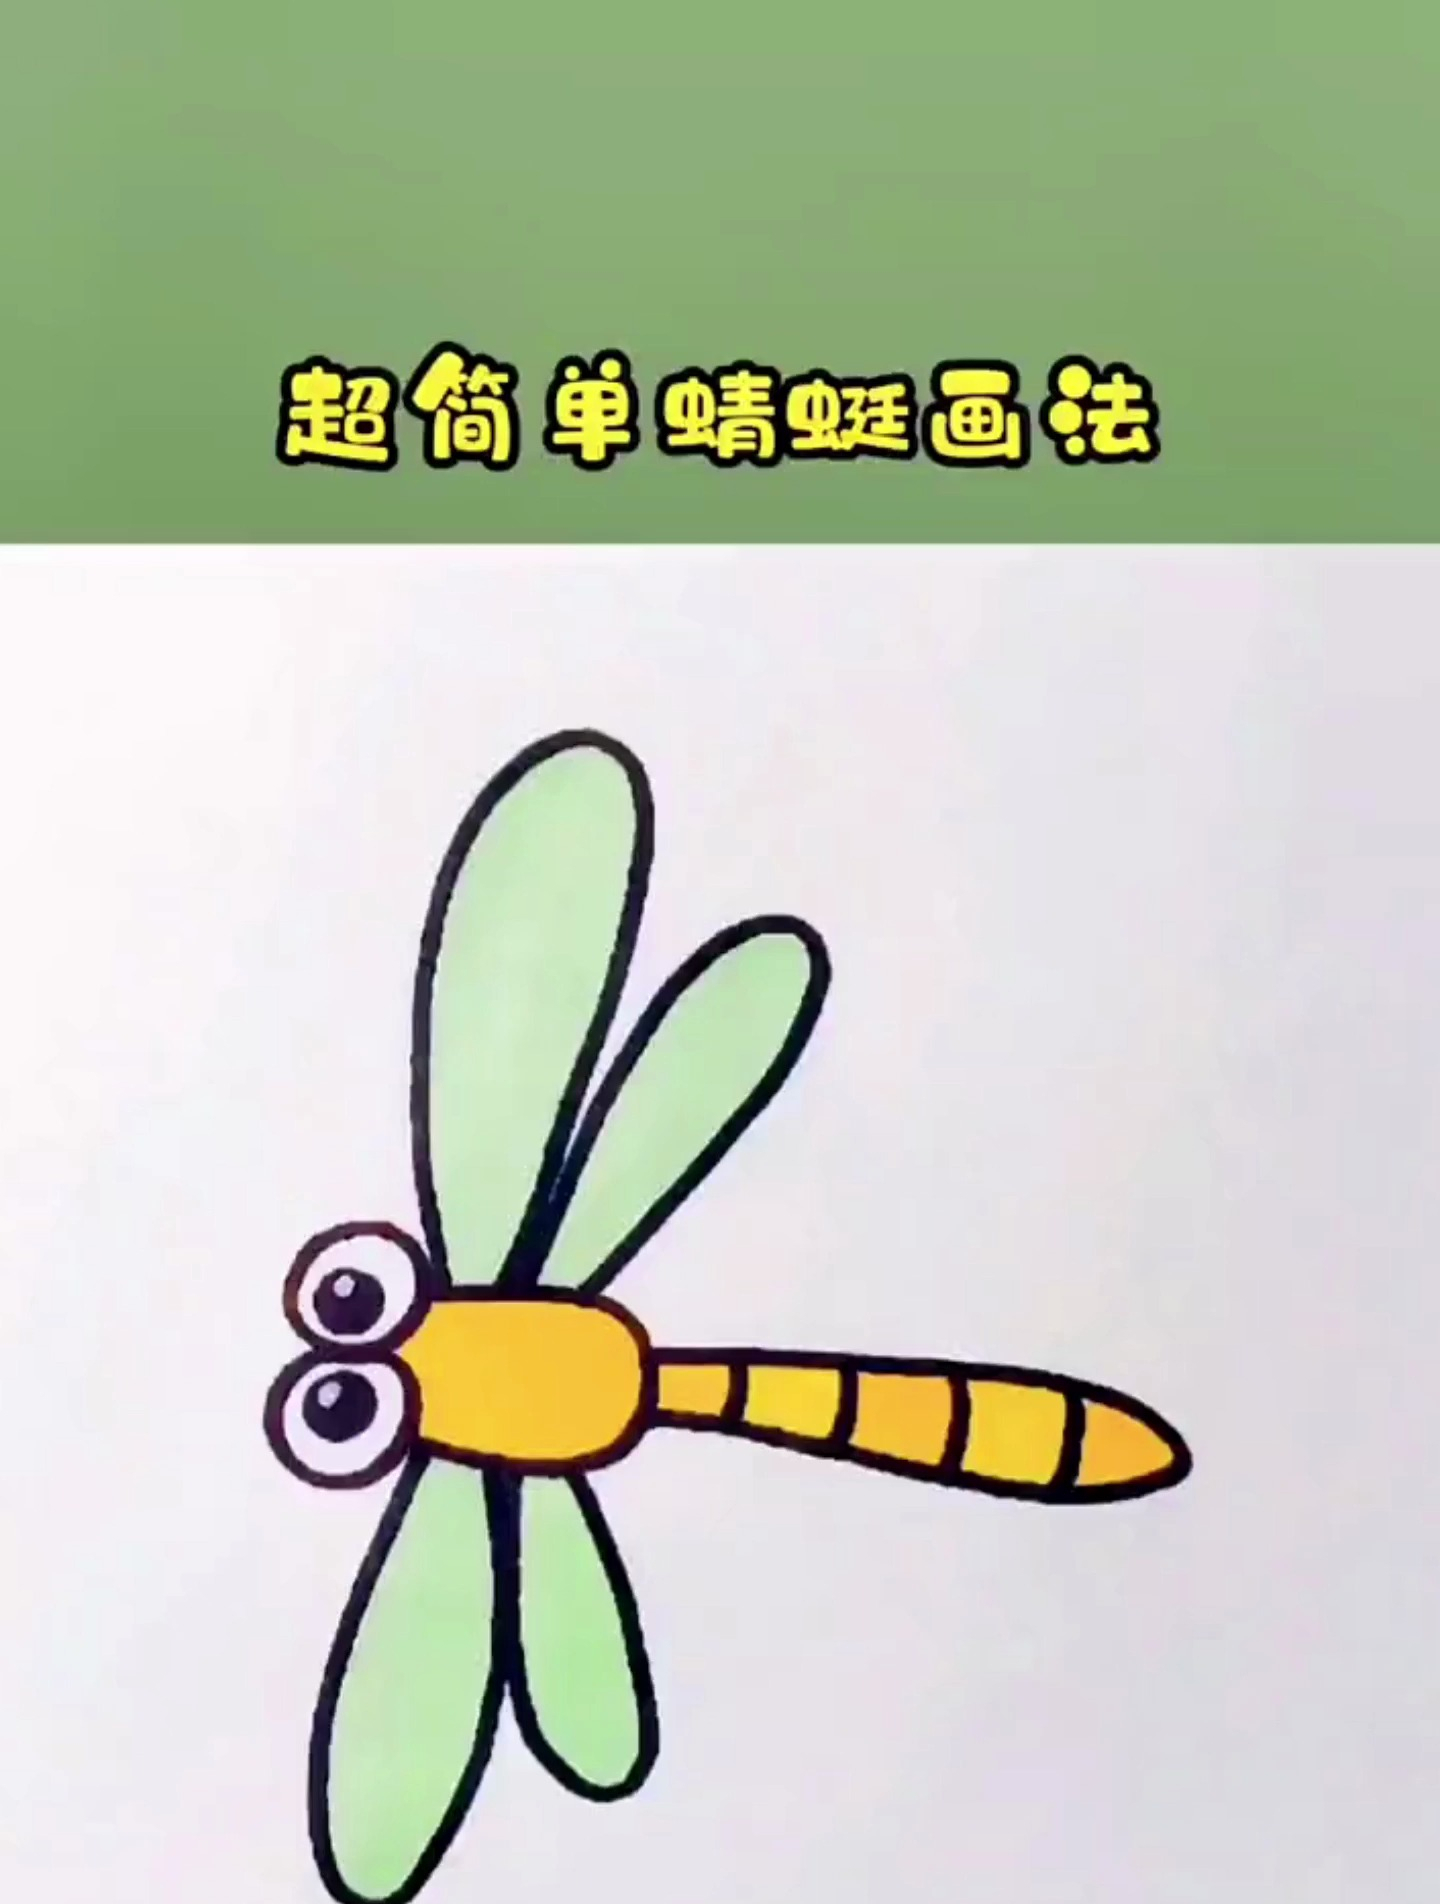 蜻蜓简笔画,30秒就能学会,超简单哦!